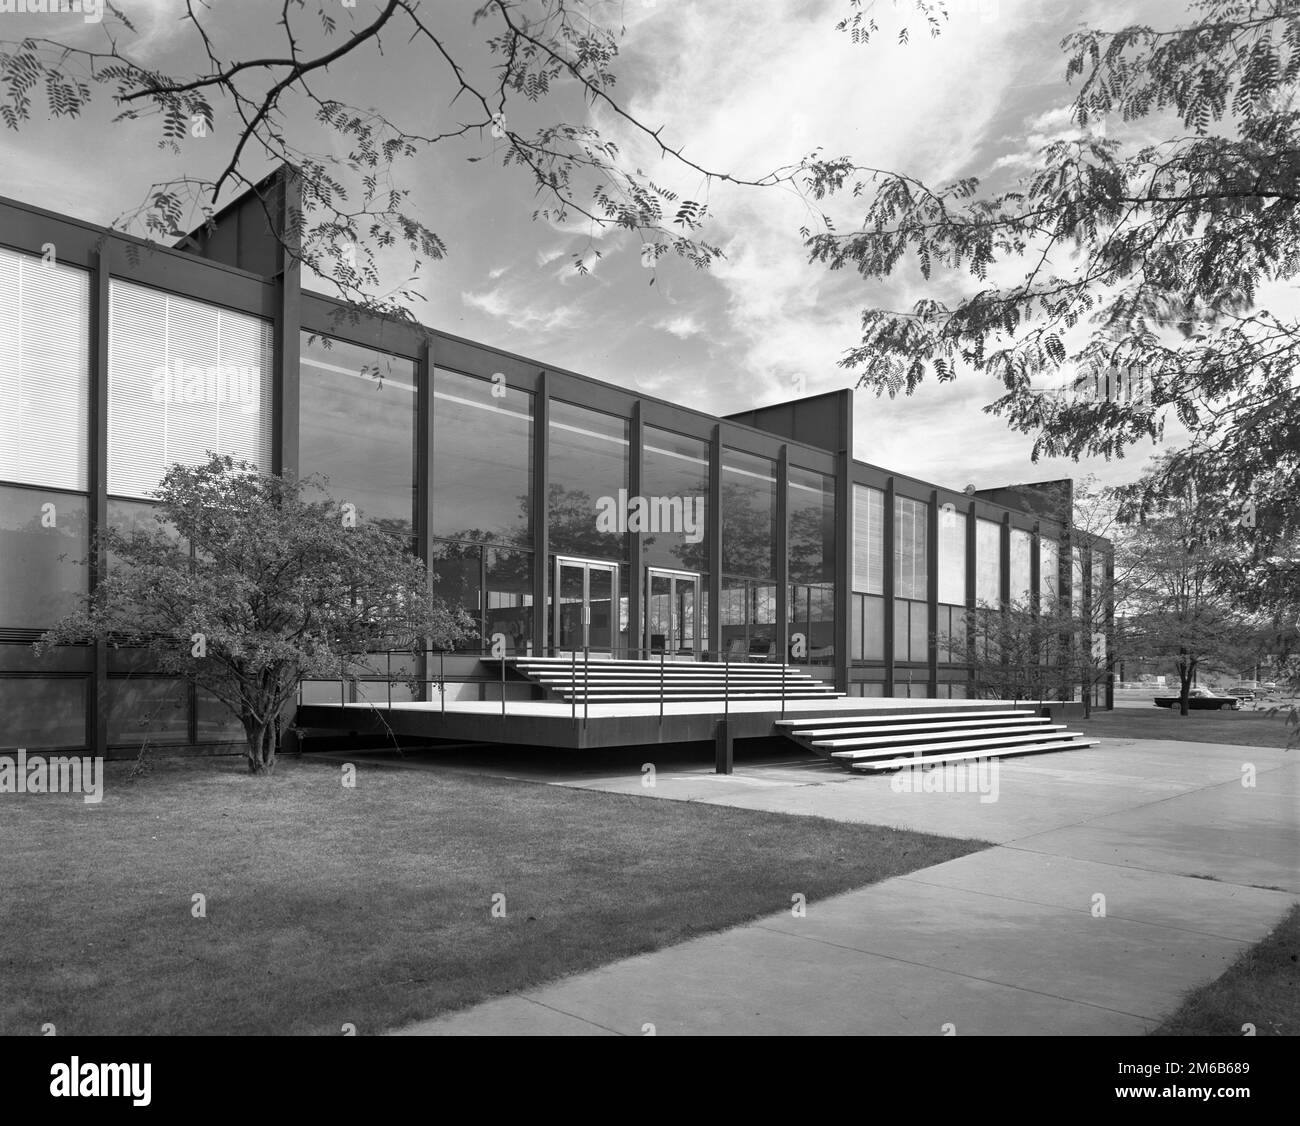 Mies van der Rohe. Die Crown Hall am Illinois Institute of Technology, Chicago, entworfen vom deutsch-amerikanischen Architekten Ludwig Mies van der Rohe (1886-1969), 1956 Stockfoto